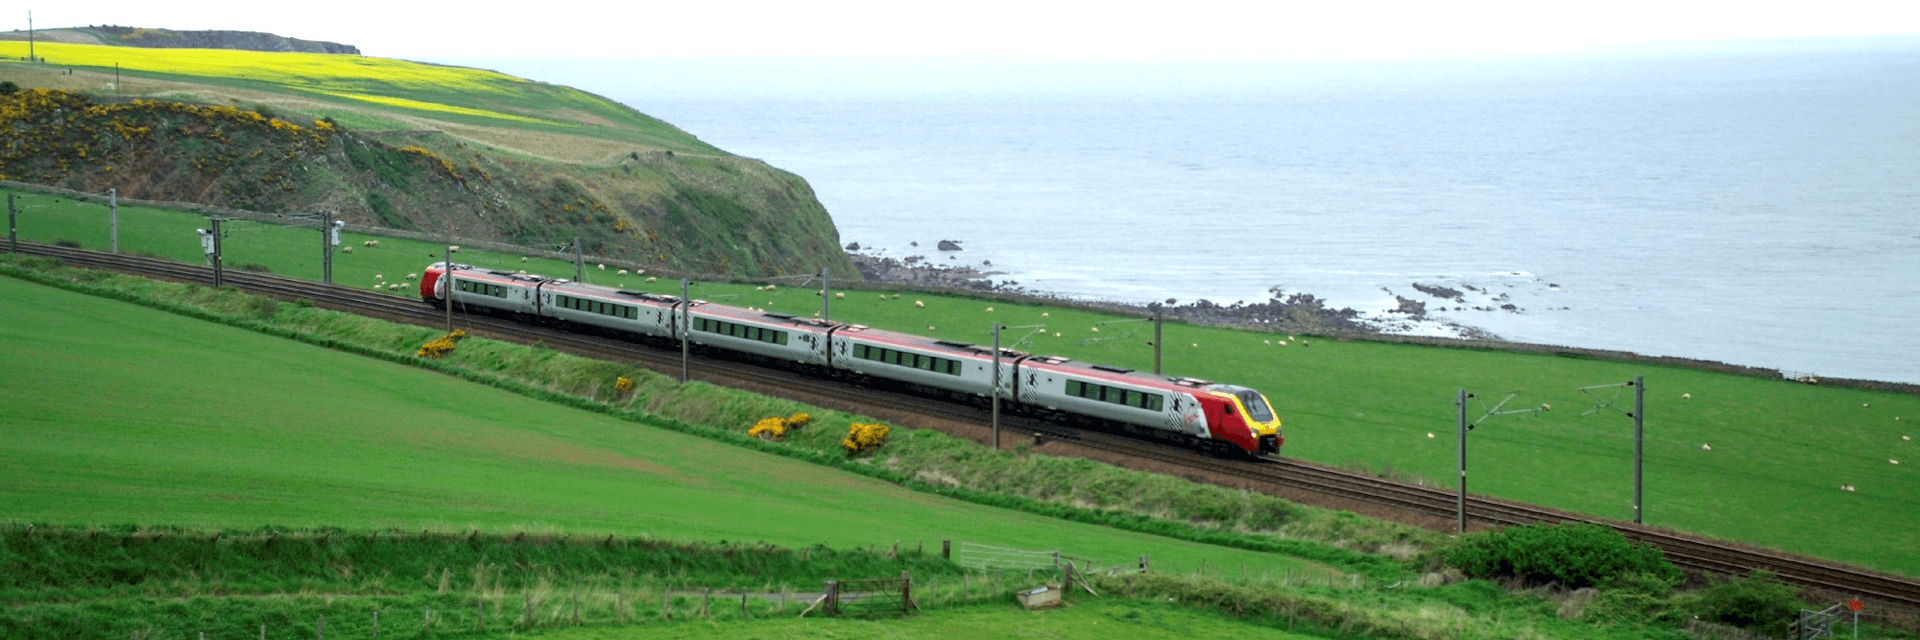 Britrail treinpassen Schotland